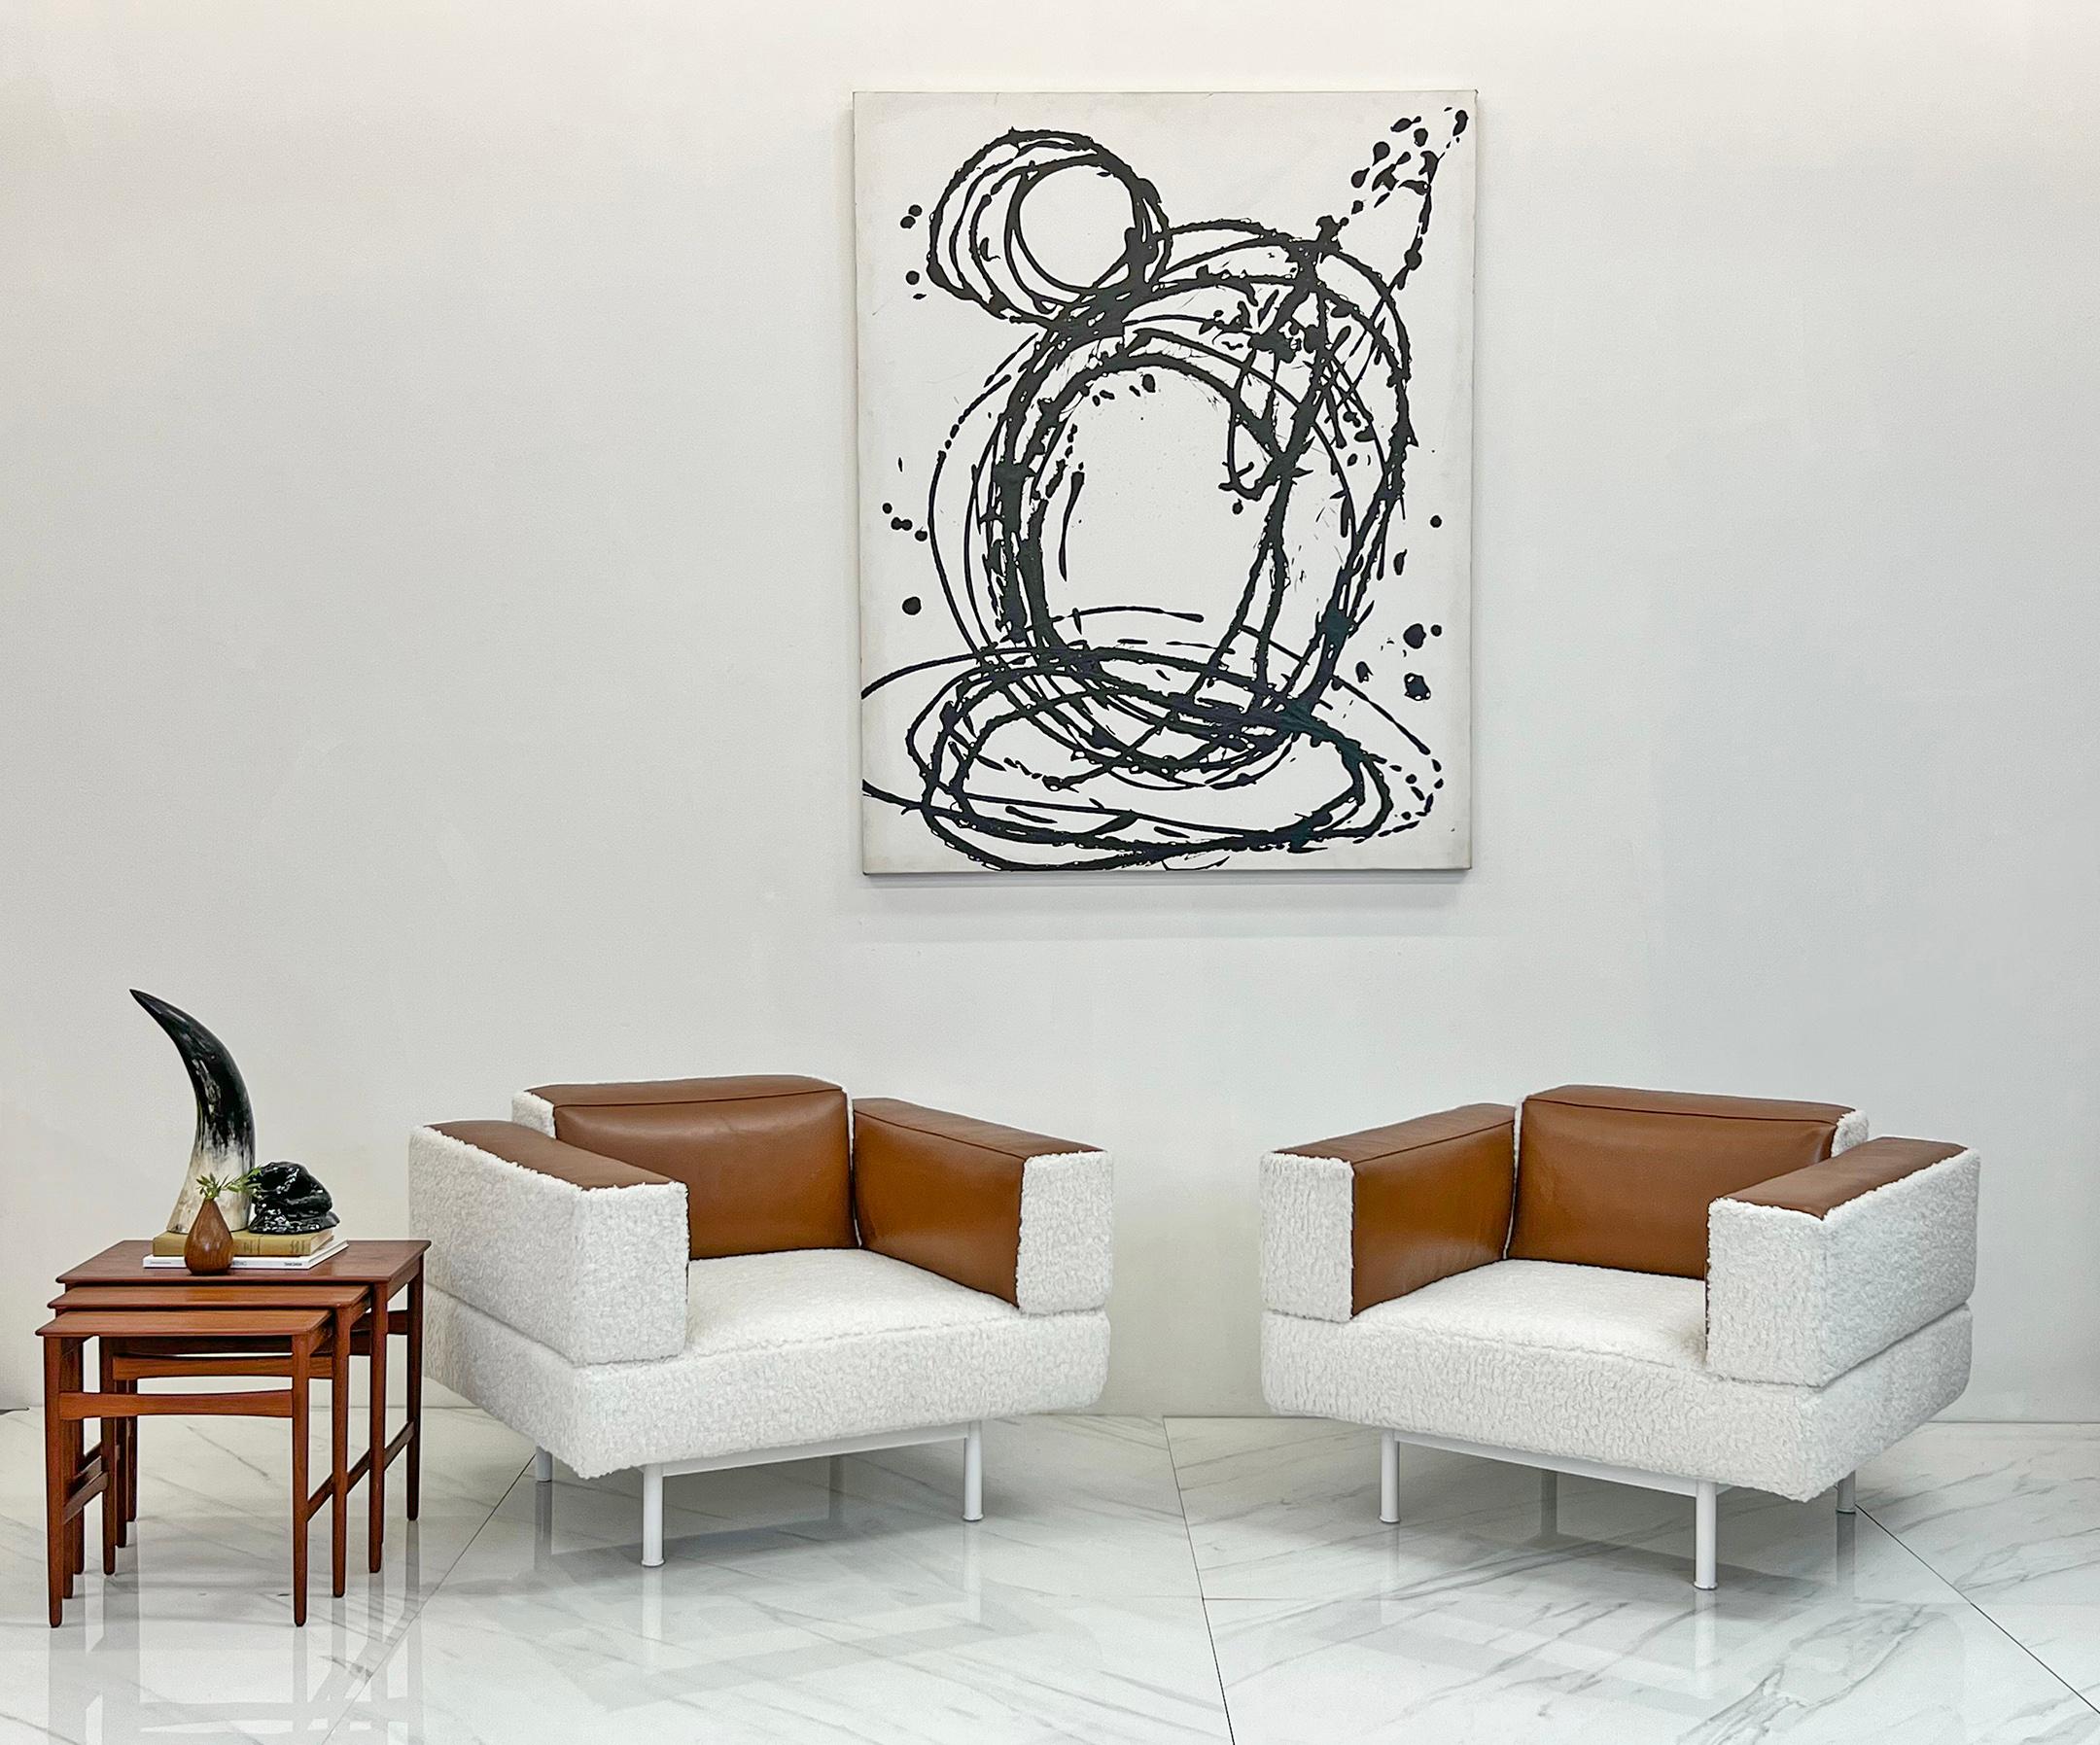 Diese Stühle sind einfach wunderschön. Diese schlichten, seltenen Stühle, die Piero Lissoni um das Jahr 2000 für Cassina entworfen hat, sind eine schöne Verbindung von Form und Funktion. Wir haben diese Stühle mit weißem Boucle bezogen, mit Akzenten